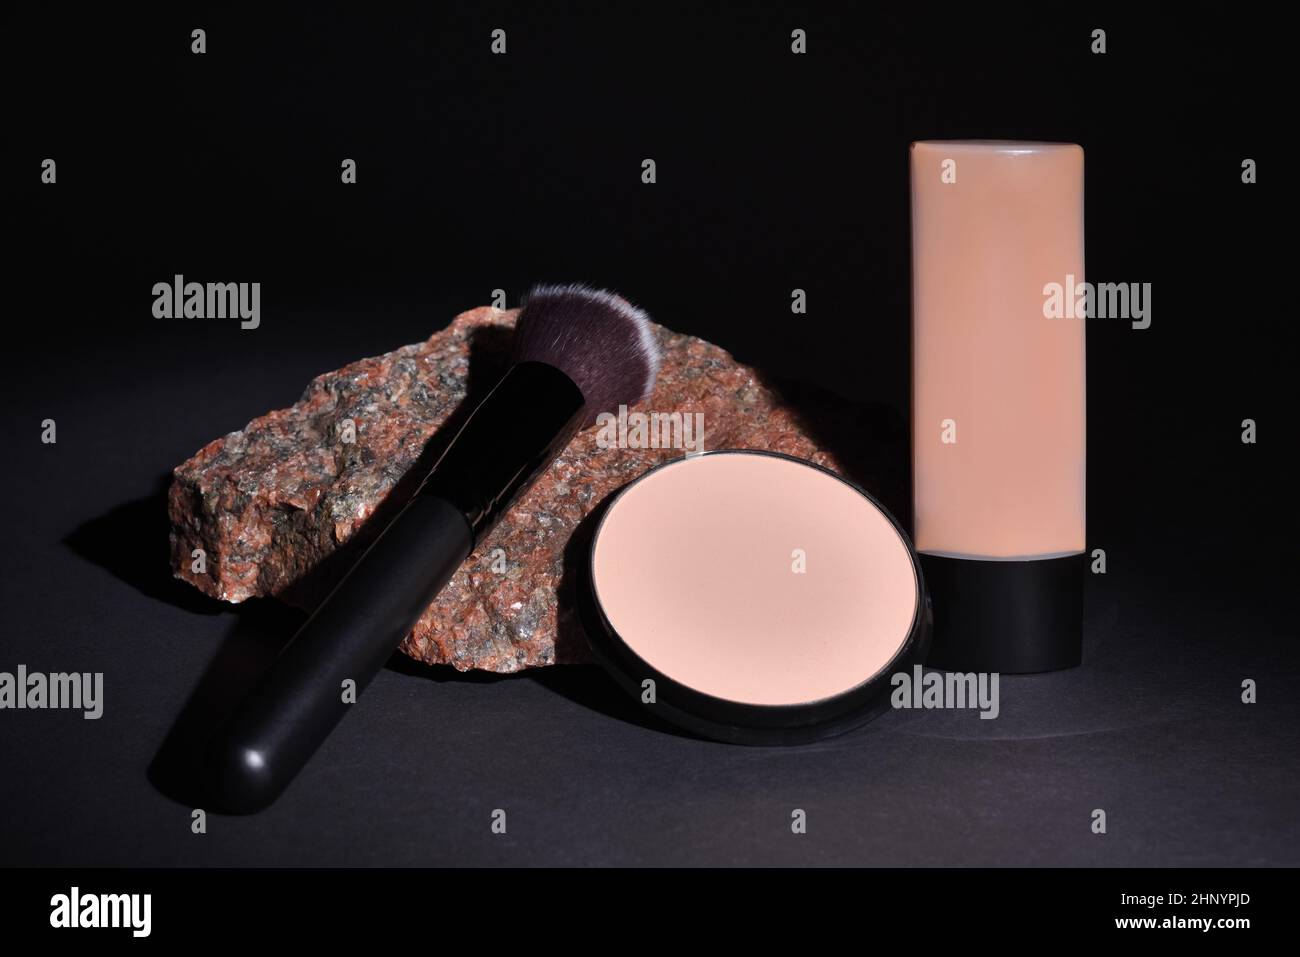 Kosmetikprodukte mit Schminkpinsel und kompaktem Pulver, das auf einem Granitstein auf schwarzem Hintergrund liegt Stockfoto